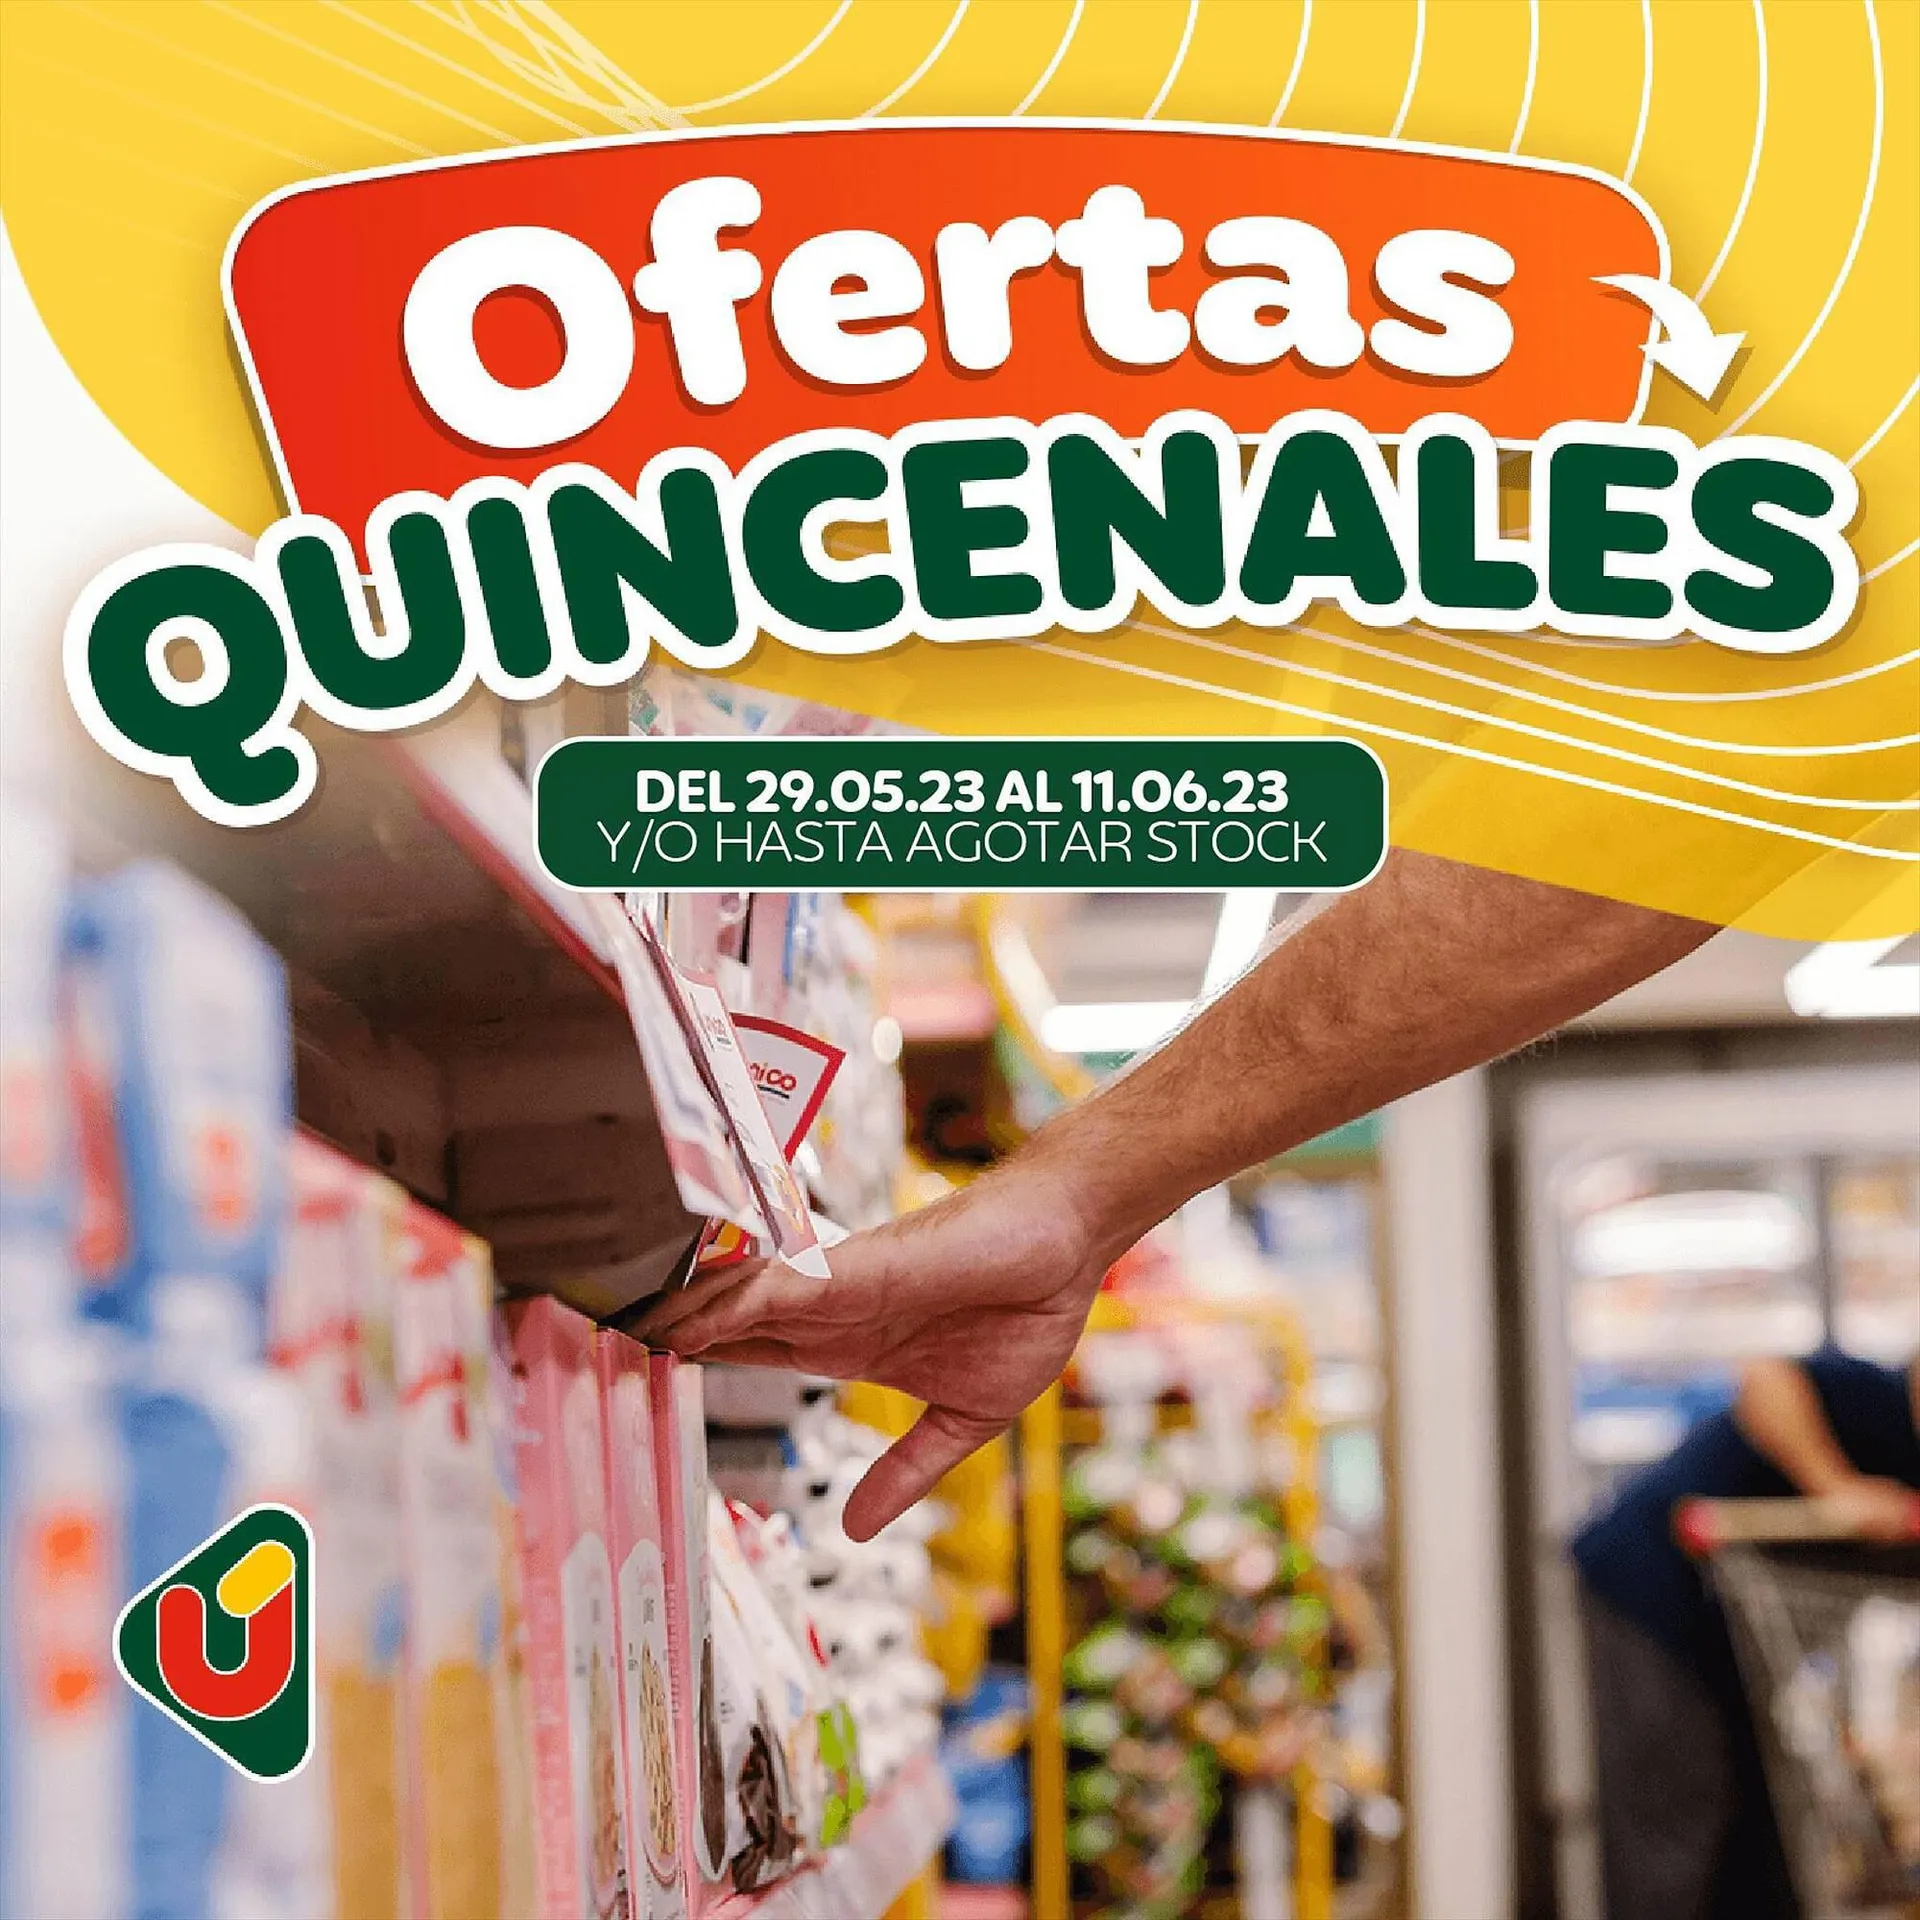 Catálogo Unico Supermercados - 1